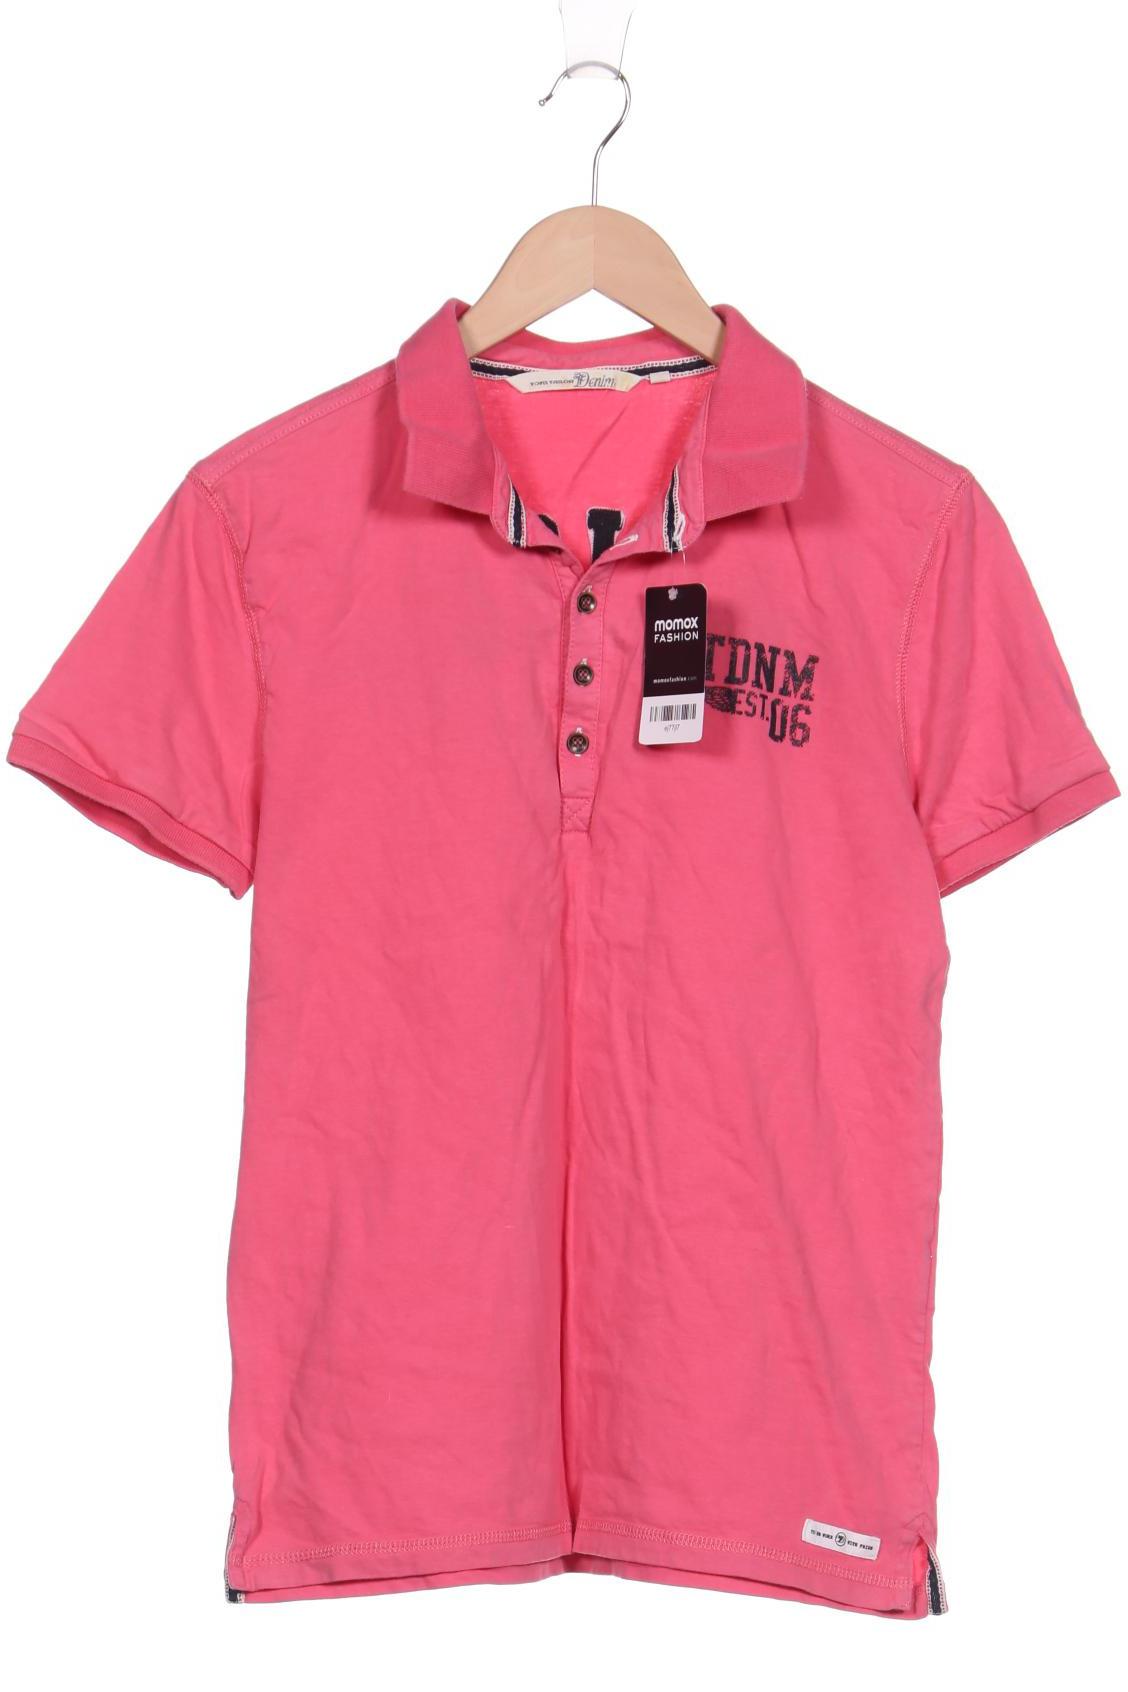 TOM TAILOR Denim Herren Poloshirt, pink von Tom Tailor Denim